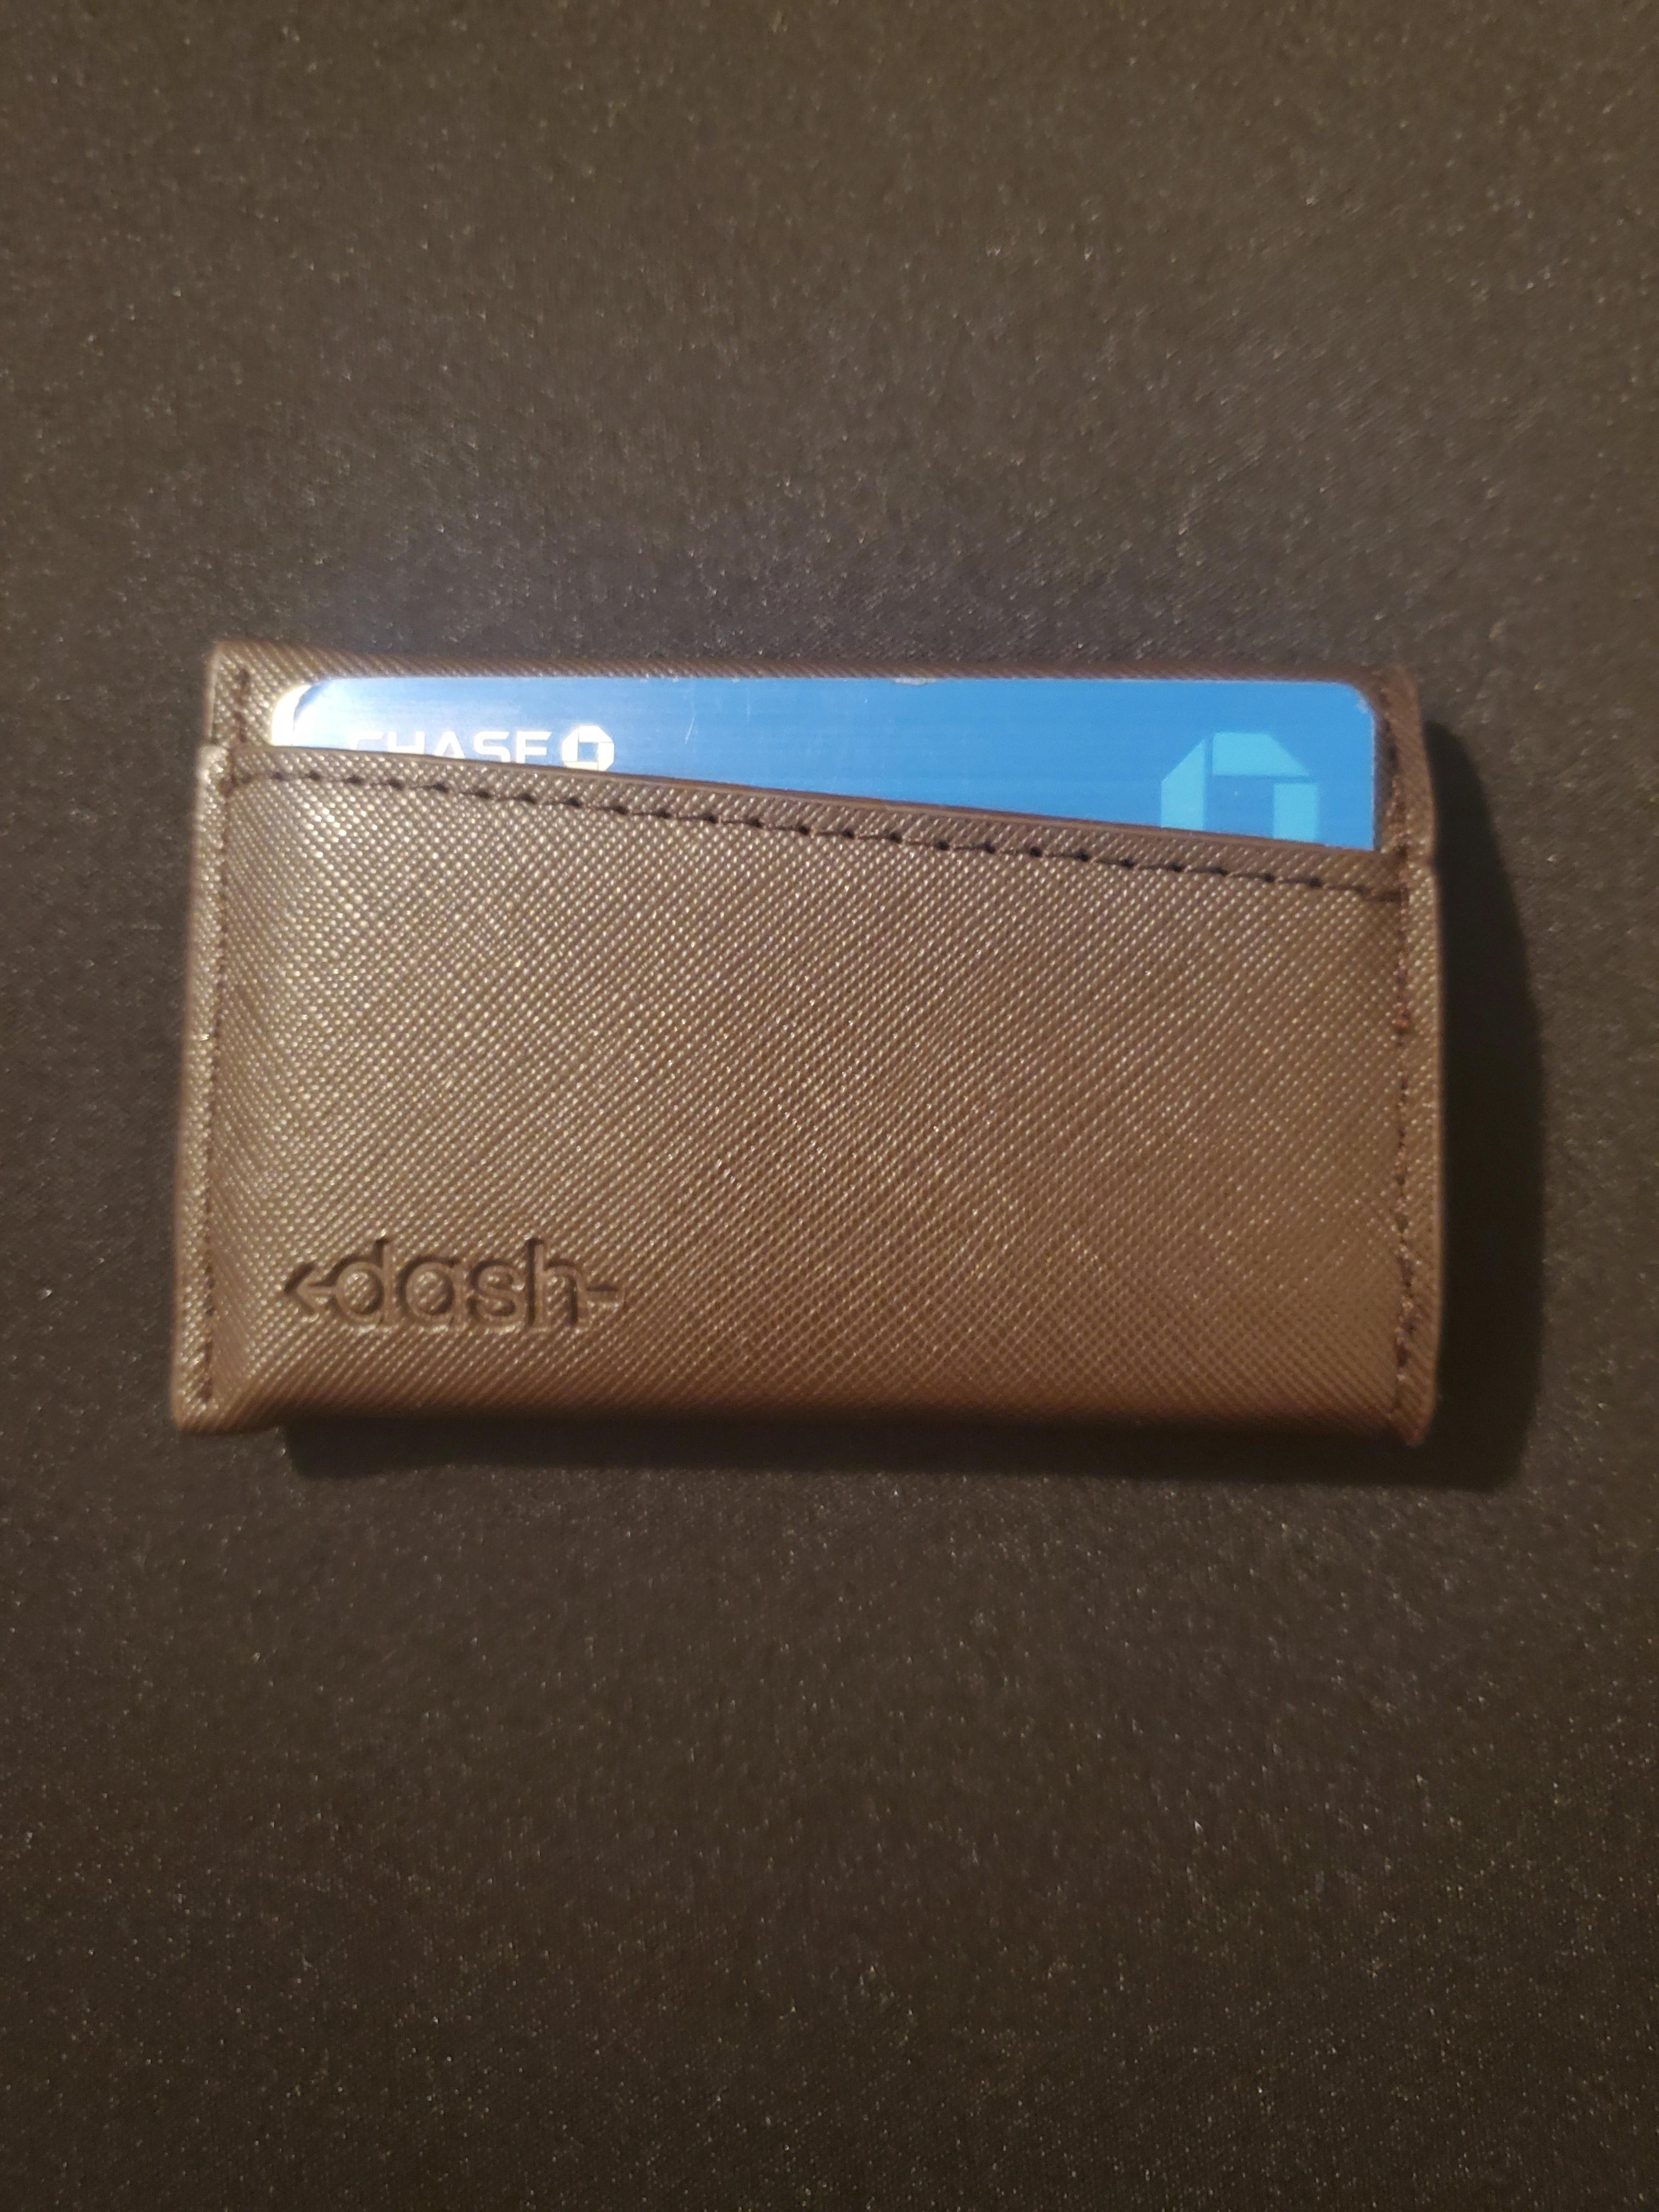 dash 3 wallet